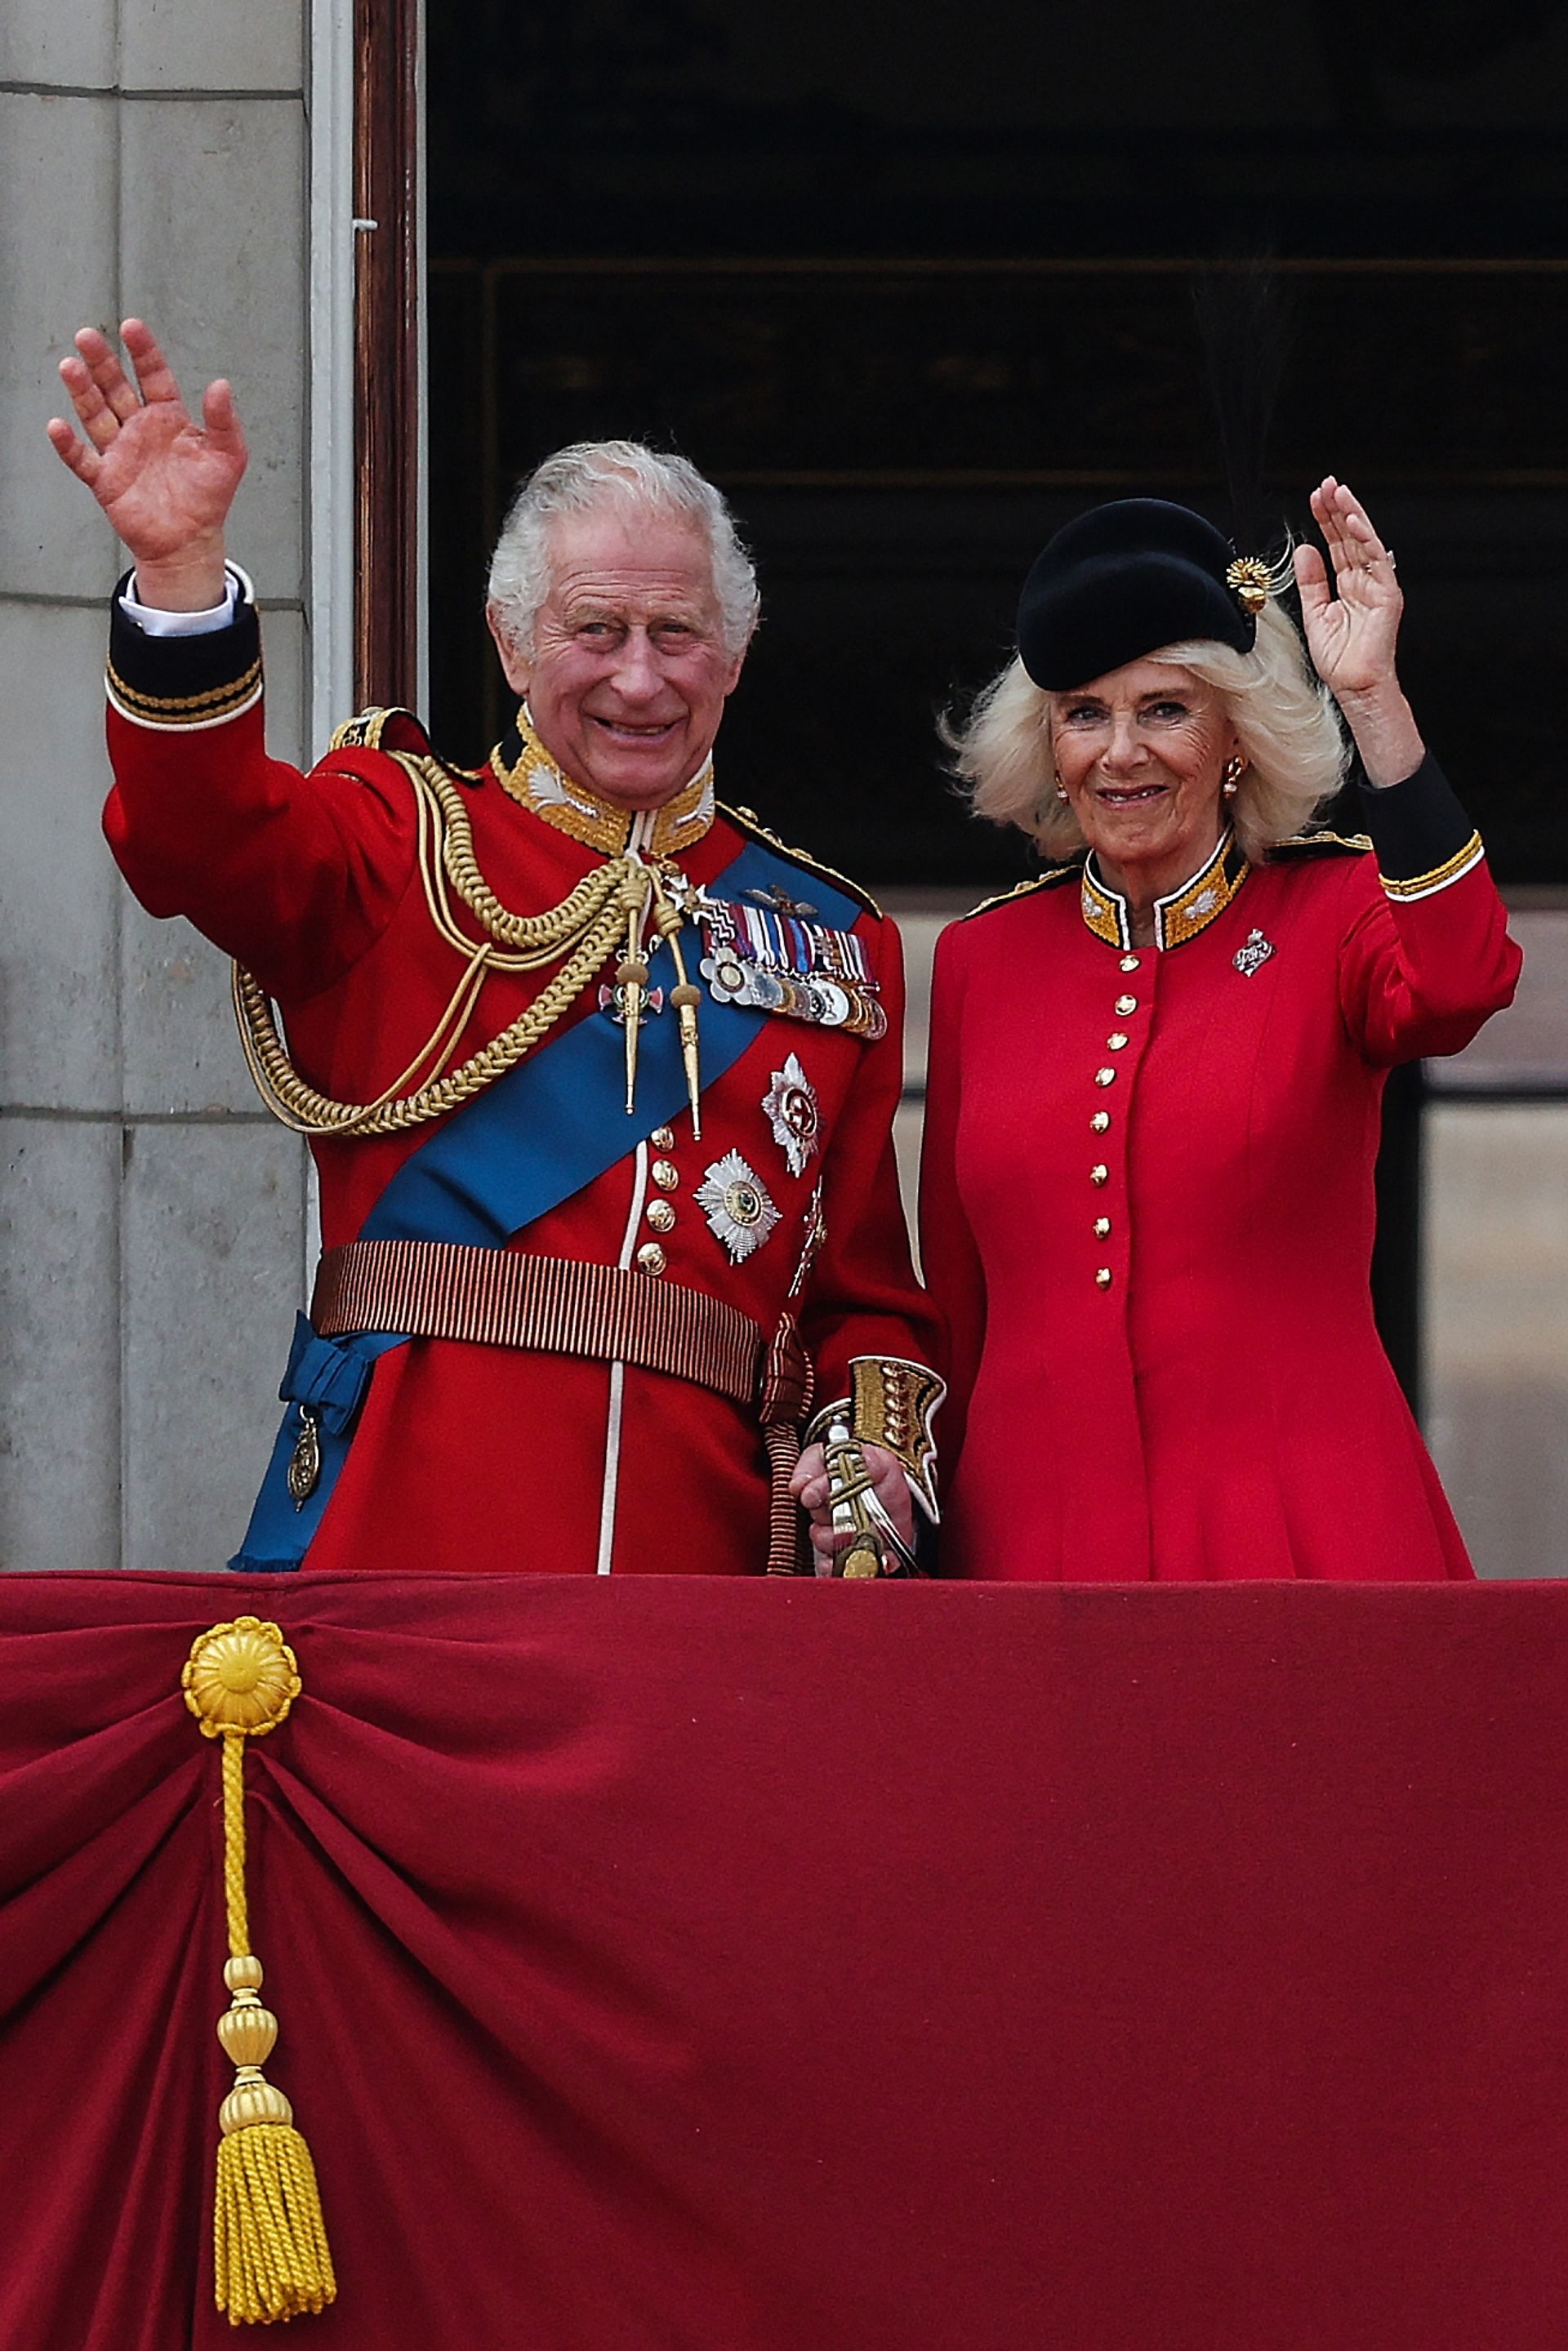 Koning Charles tijdens zijn eerste balkonscène als vorst samen met koningin Camilla in 2023.